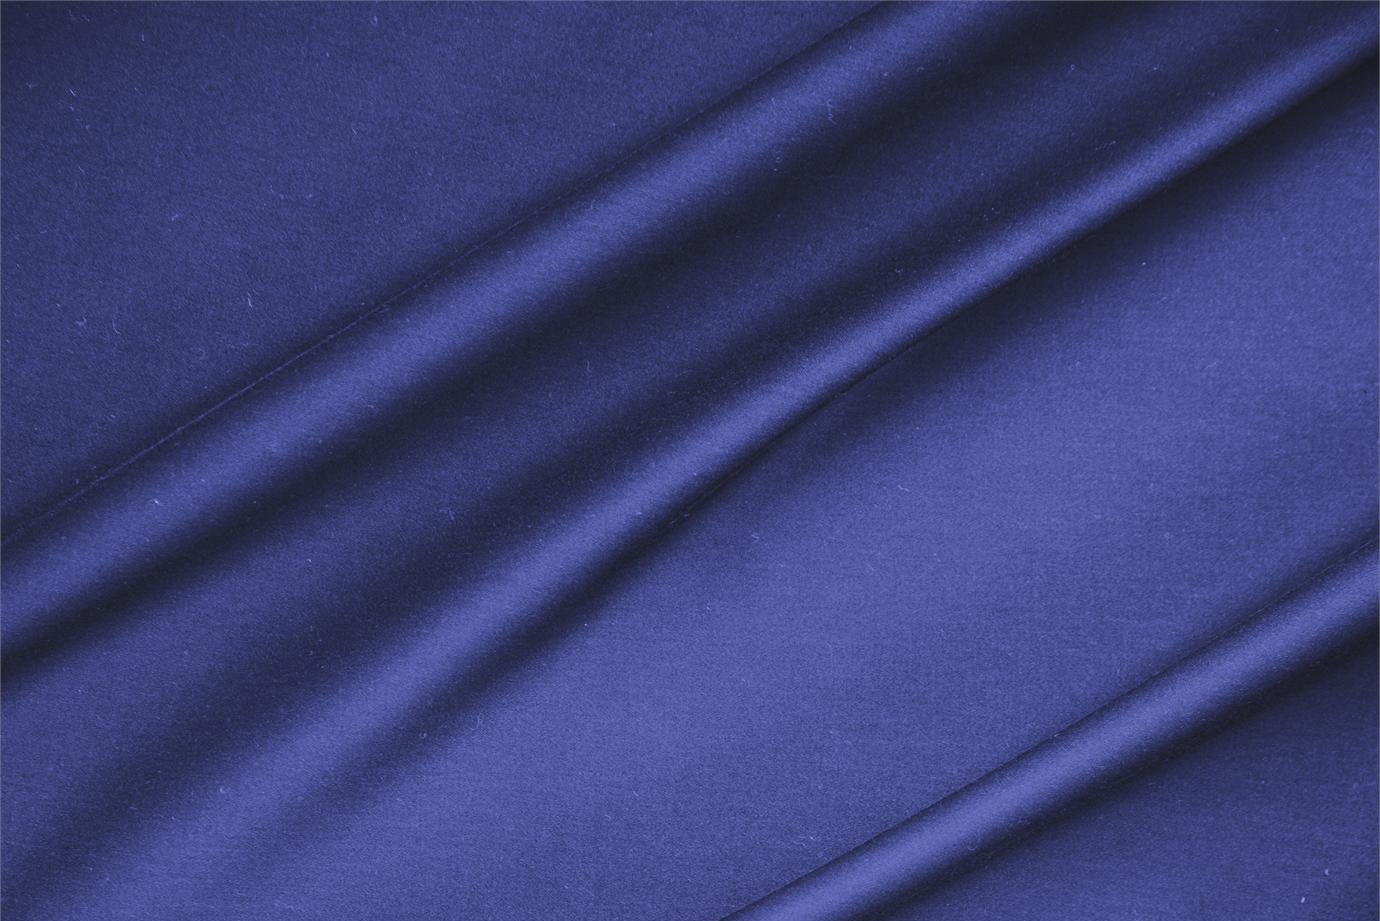 Tessuto Rasatello di Cotone Stretch Blu Zaffiro in Cotone, Stretch per abbigliamento